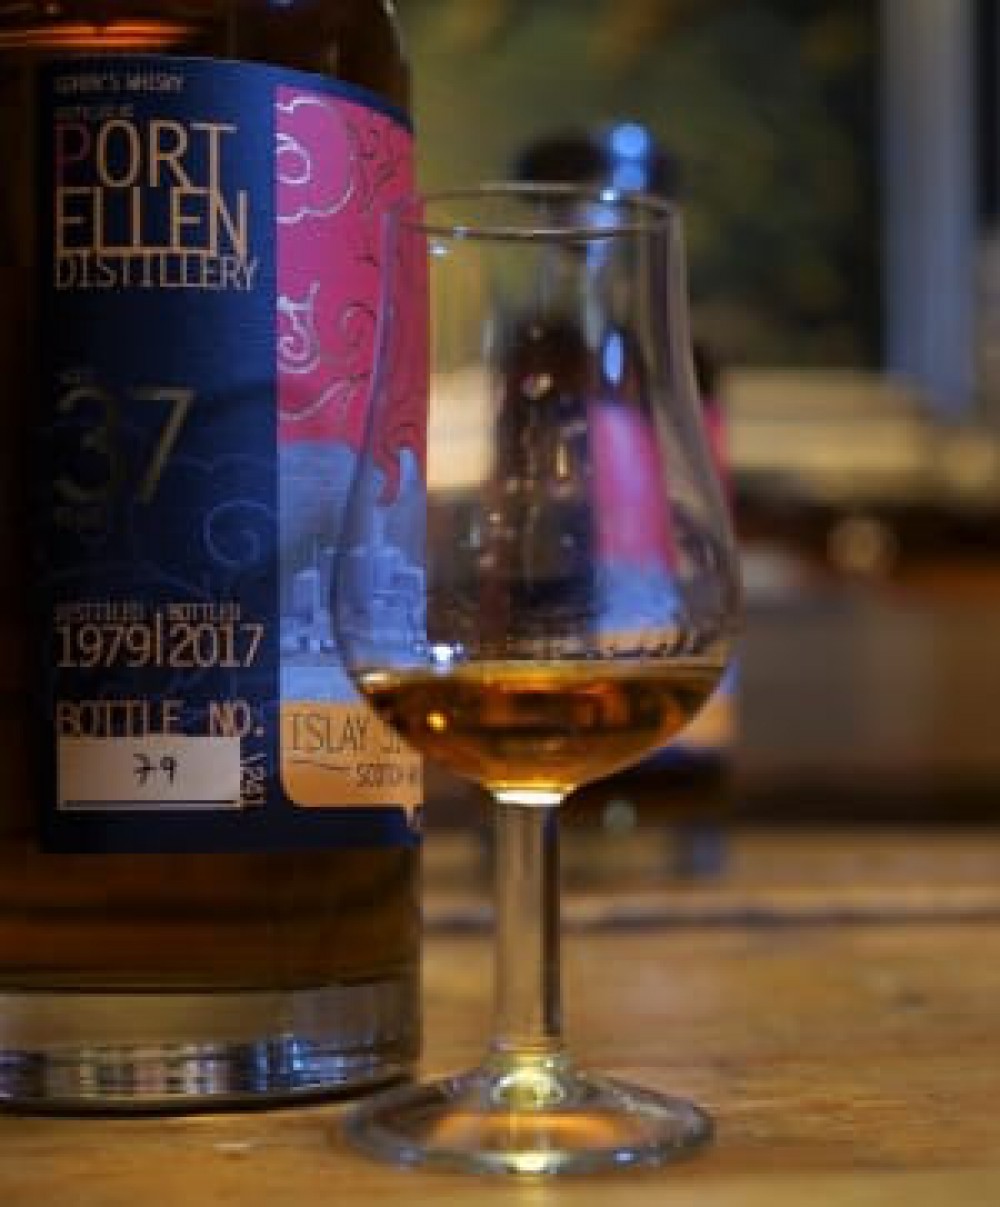 Tasting the Port Ellen 37 years Old Goren’s whisky